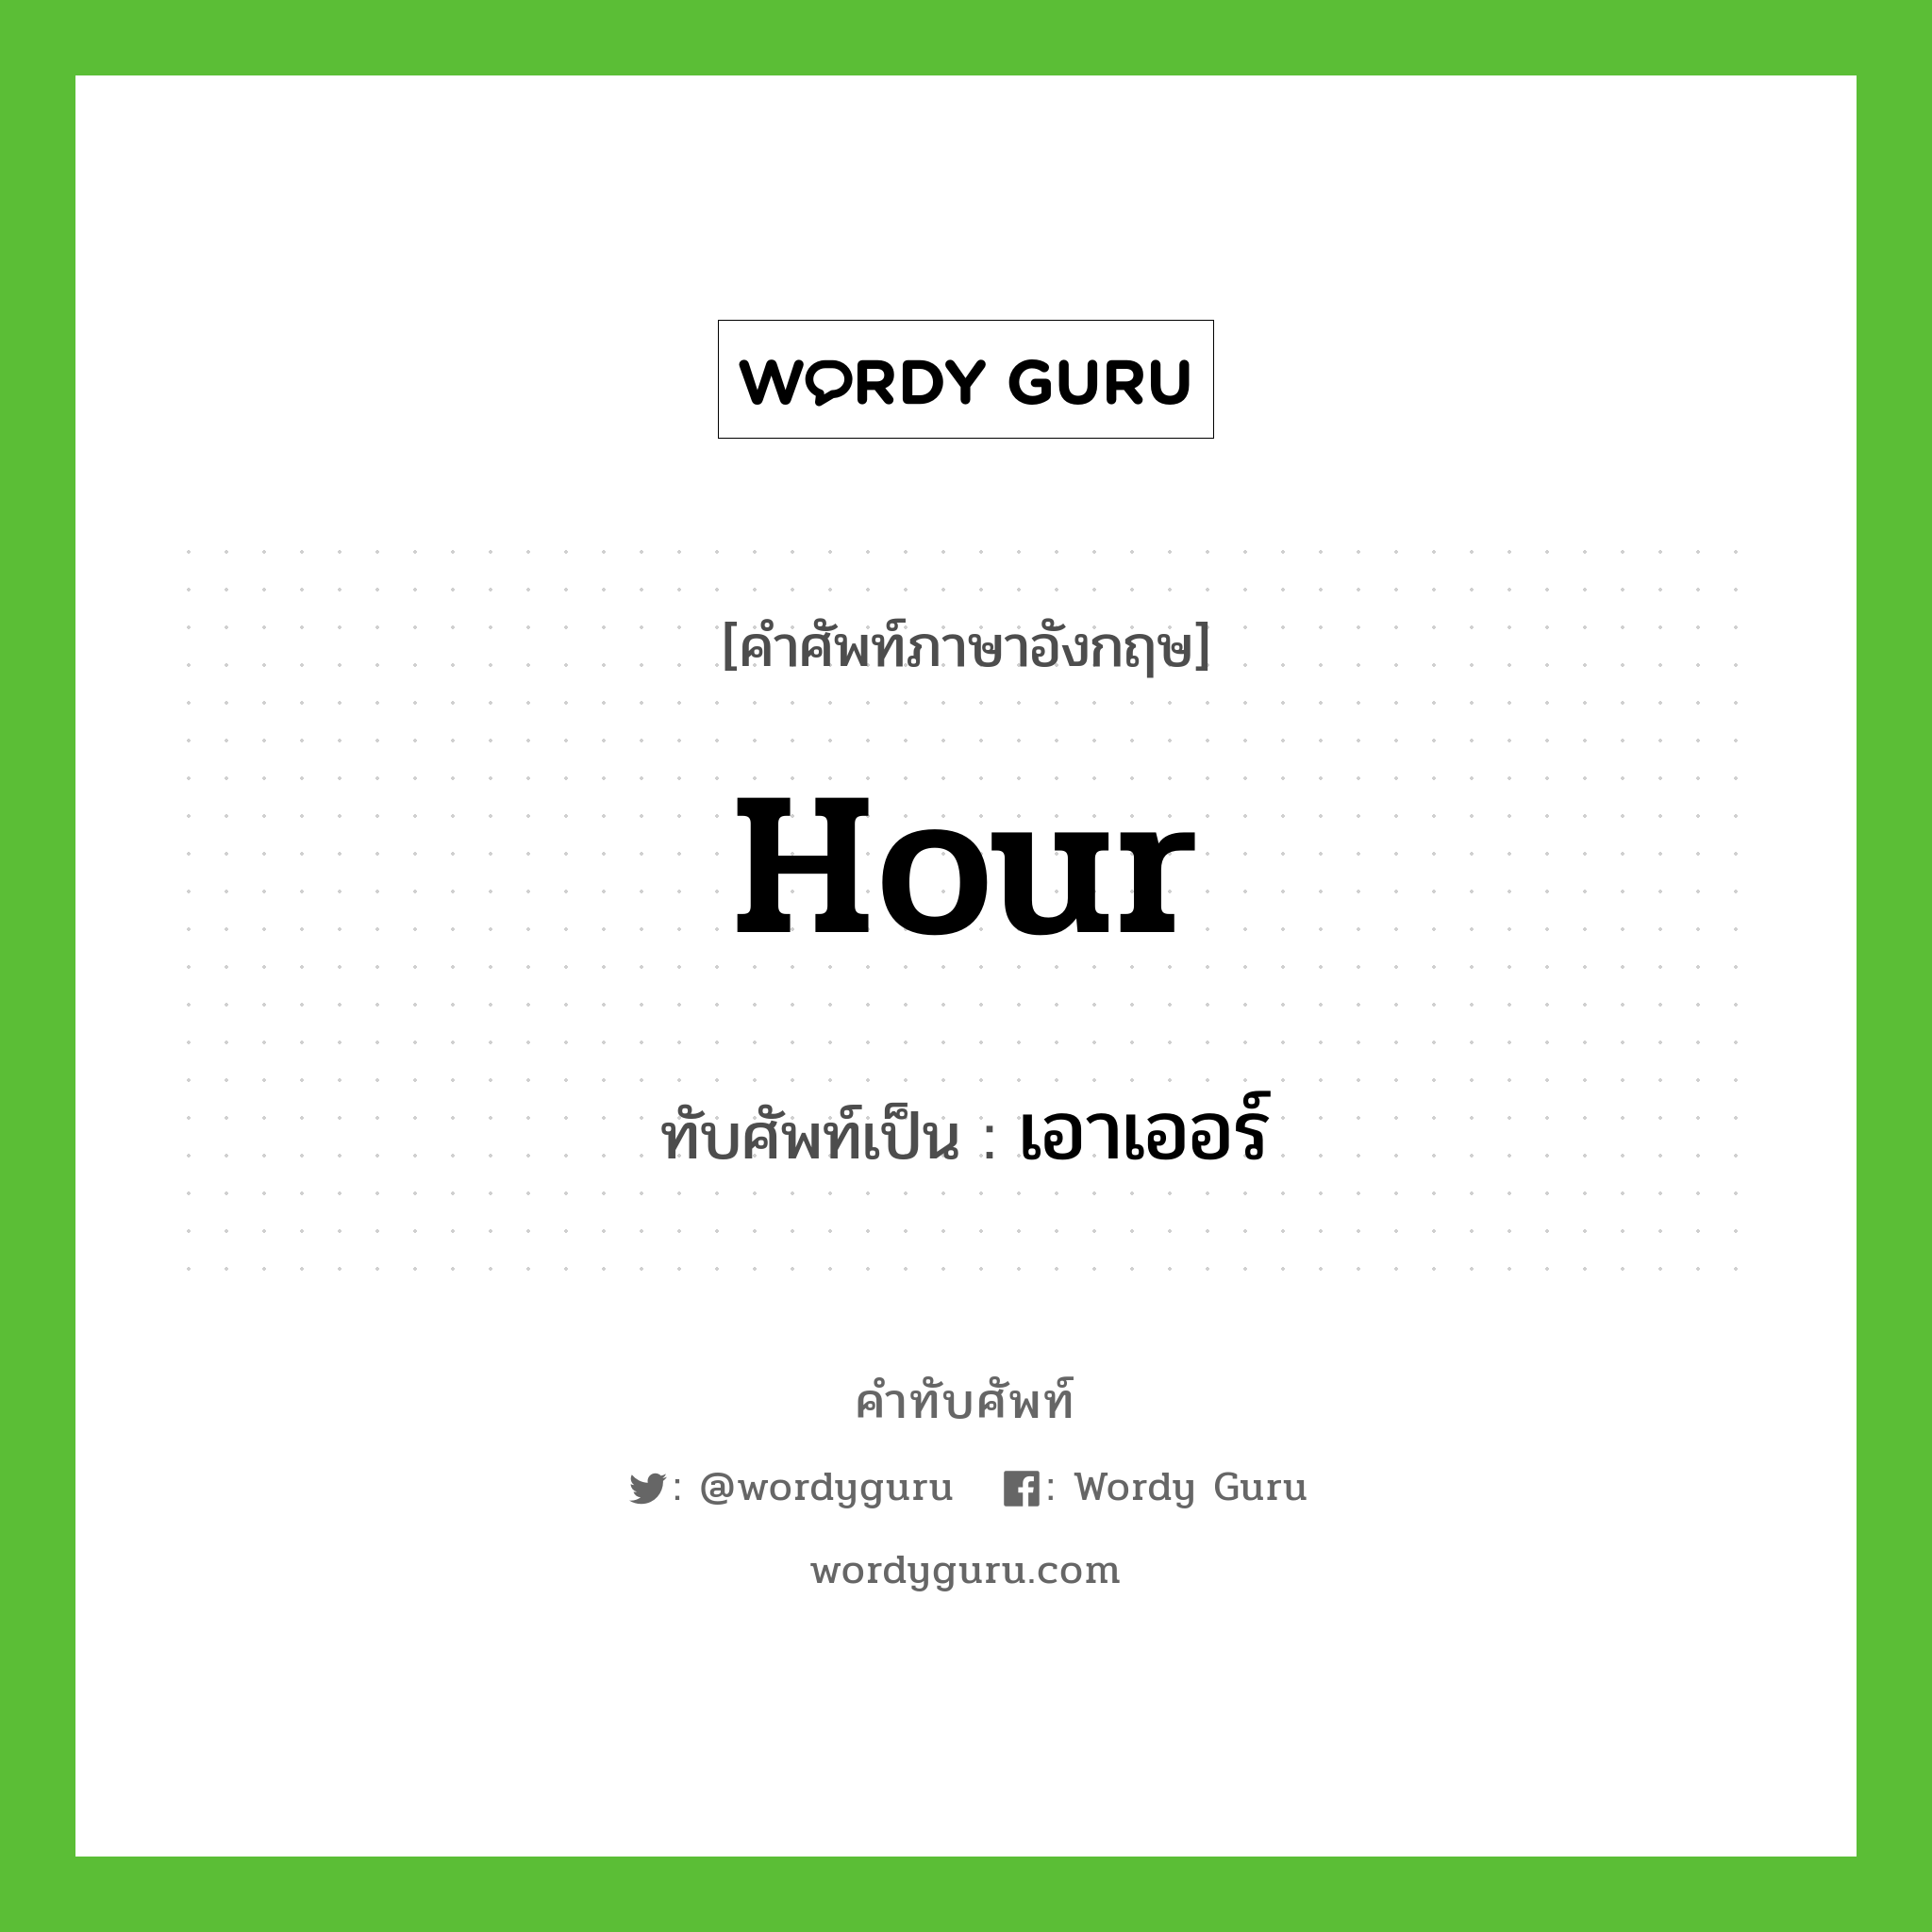 hour เขียนเป็นคำไทยว่าอะไร?, คำศัพท์ภาษาอังกฤษ hour ทับศัพท์เป็น เอาเออร์